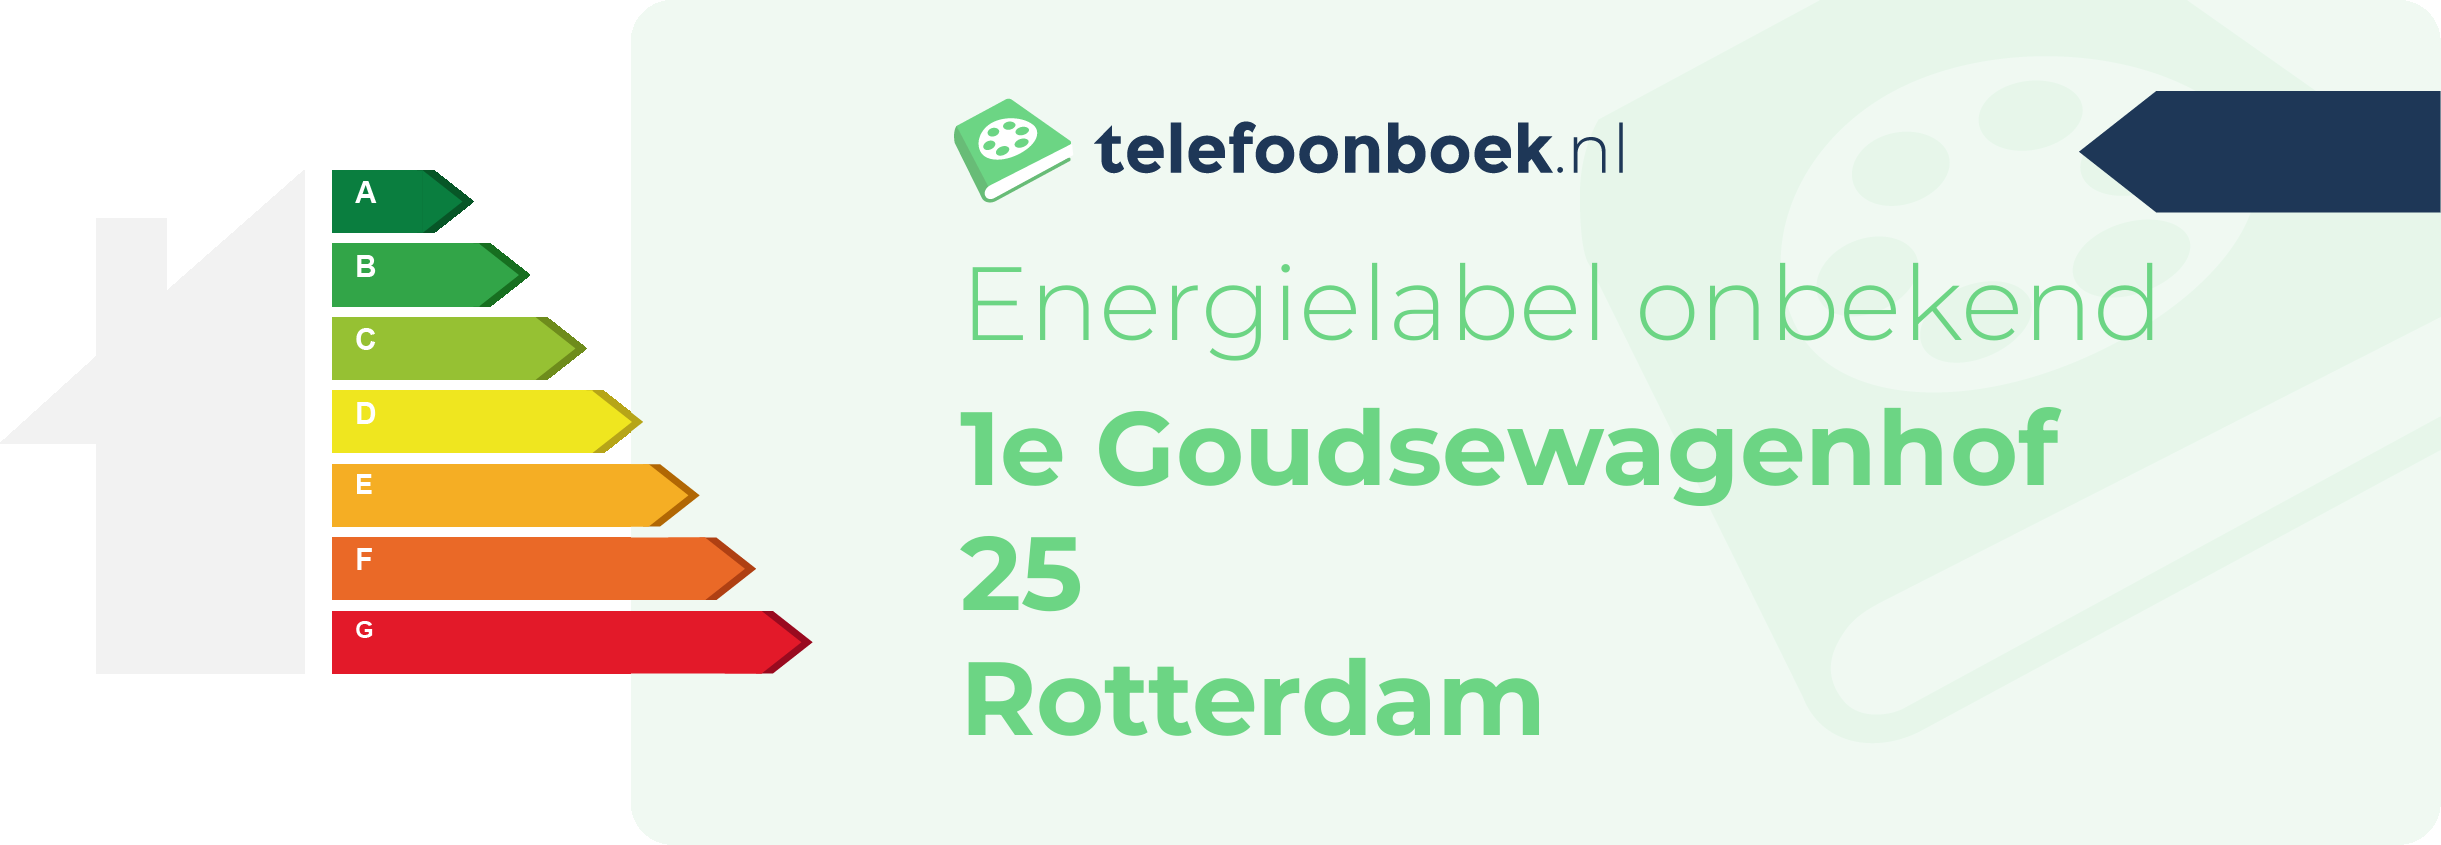 Energielabel 1e Goudsewagenhof 25 Rotterdam